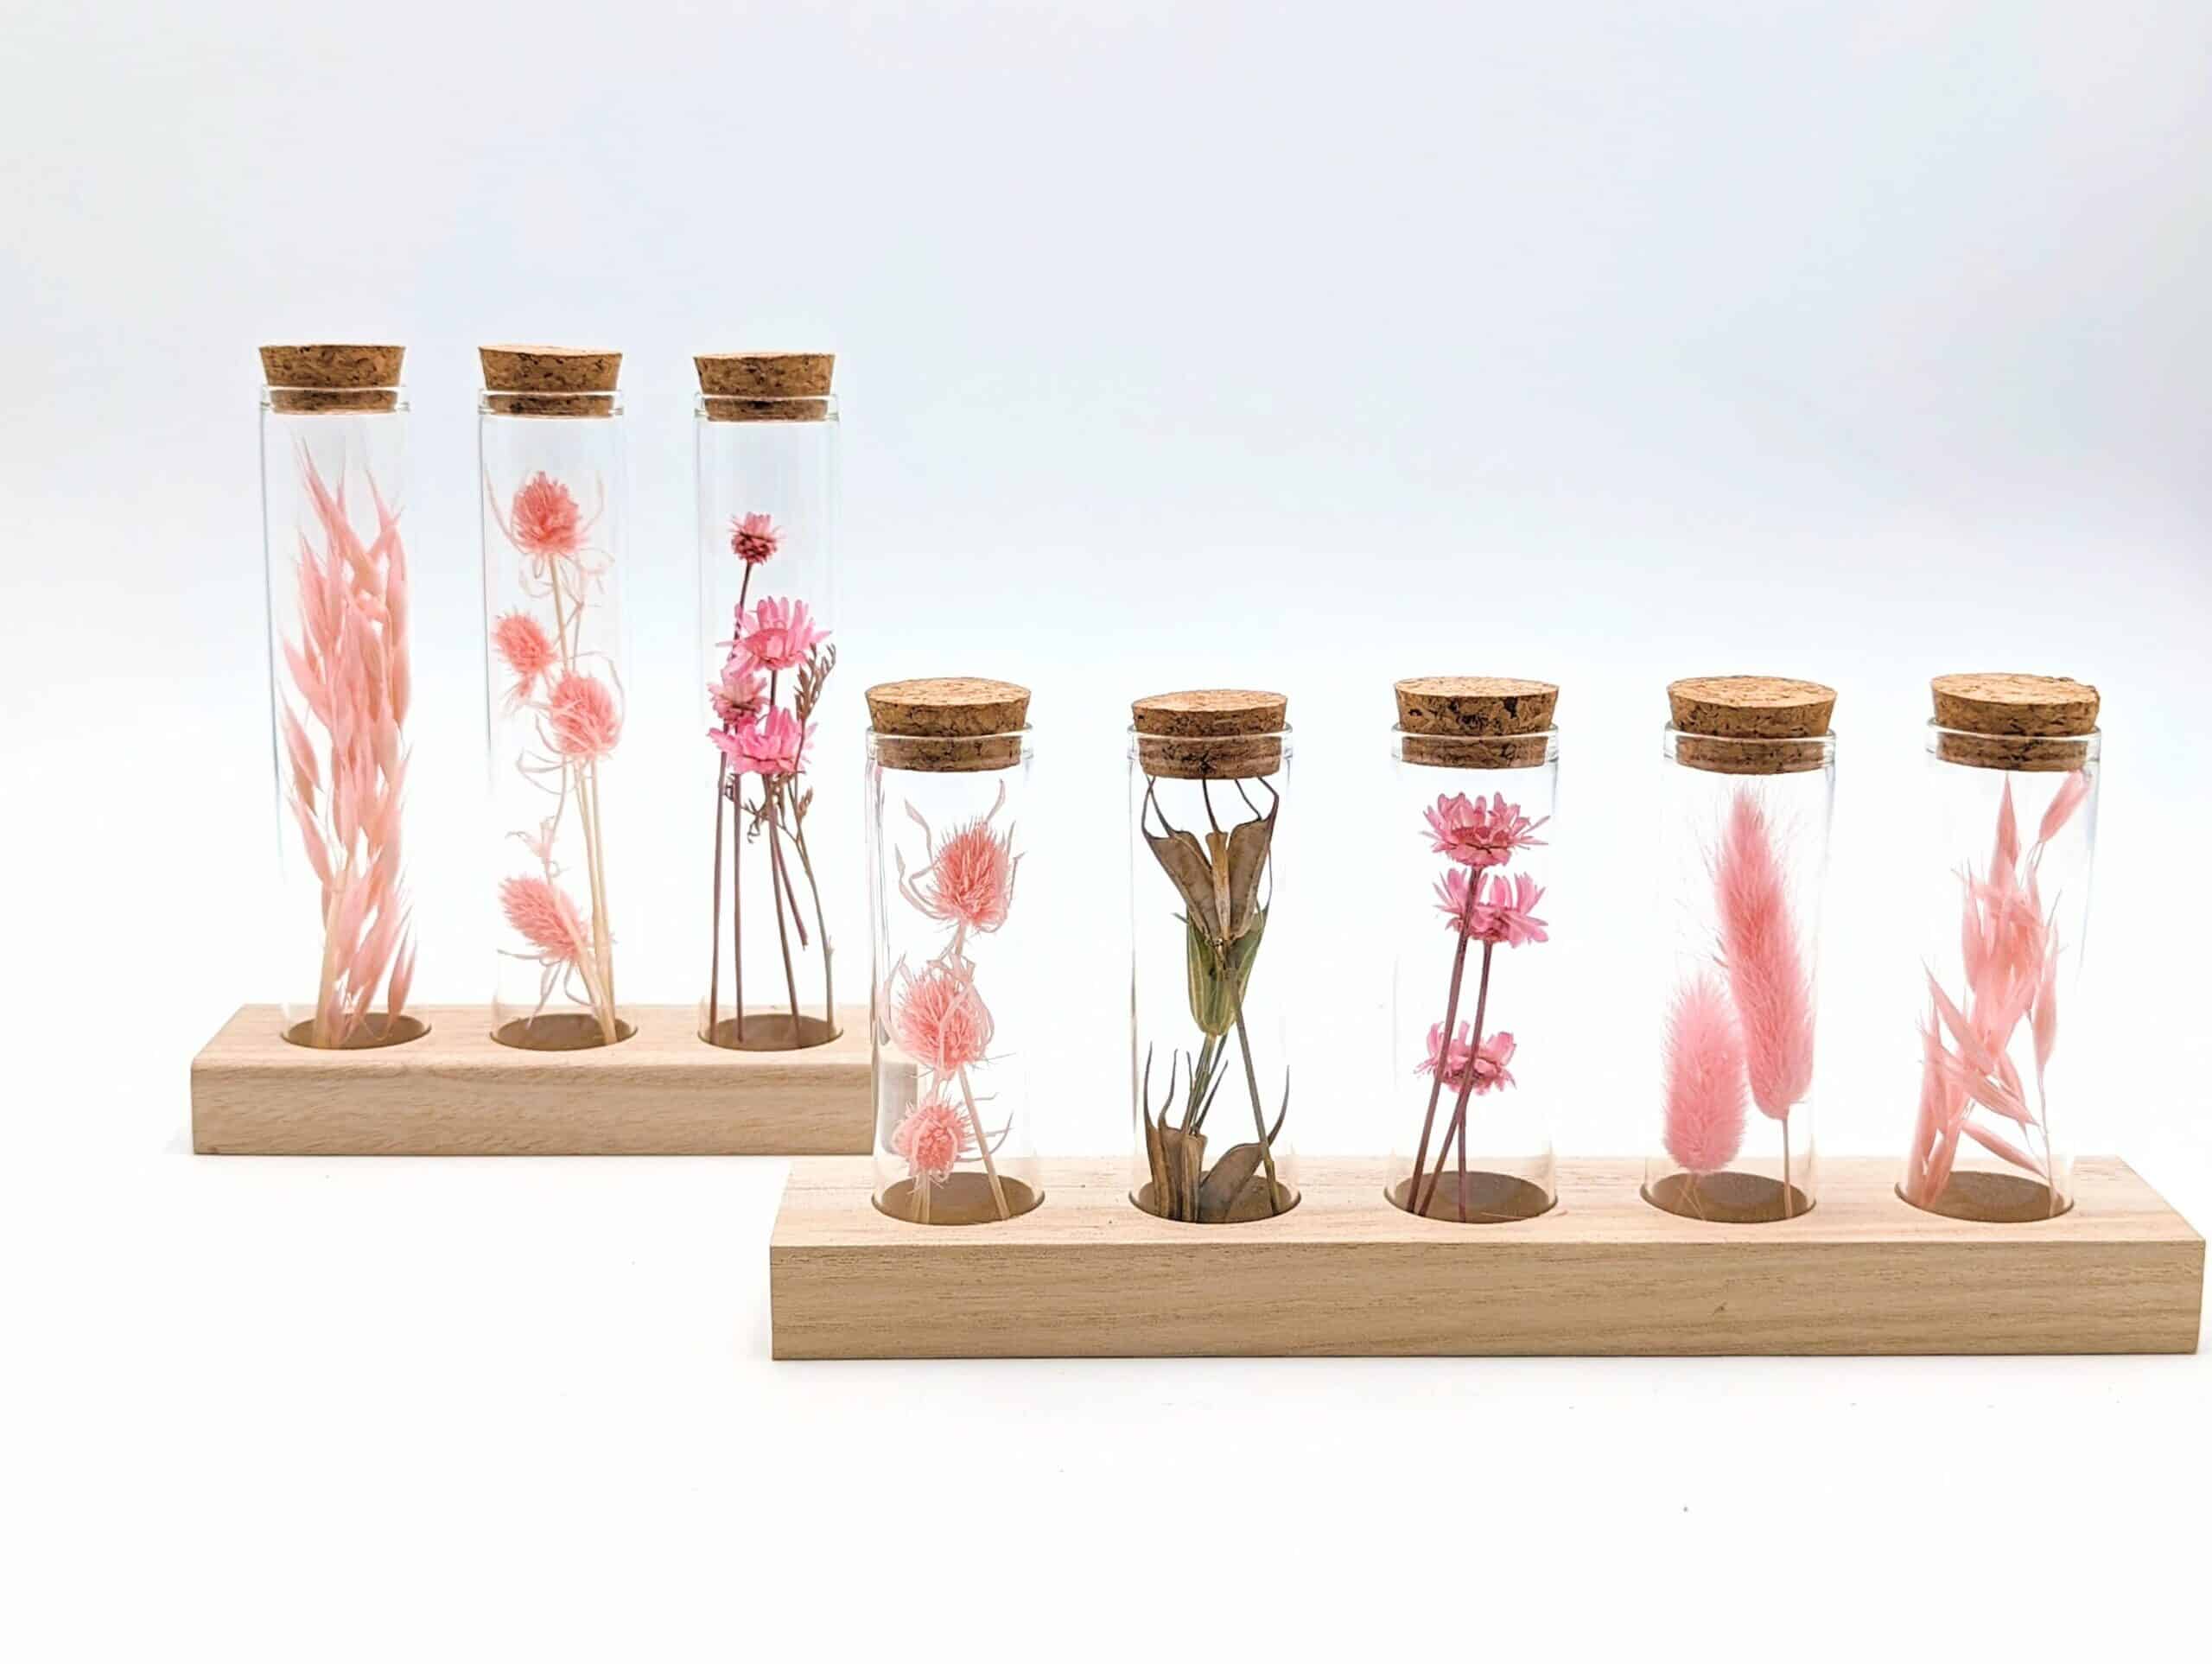 Eprouvette fleurs séchées rose pâle, petits tubes en verre avec fleurs séchées à l'intérieur sur support en bois